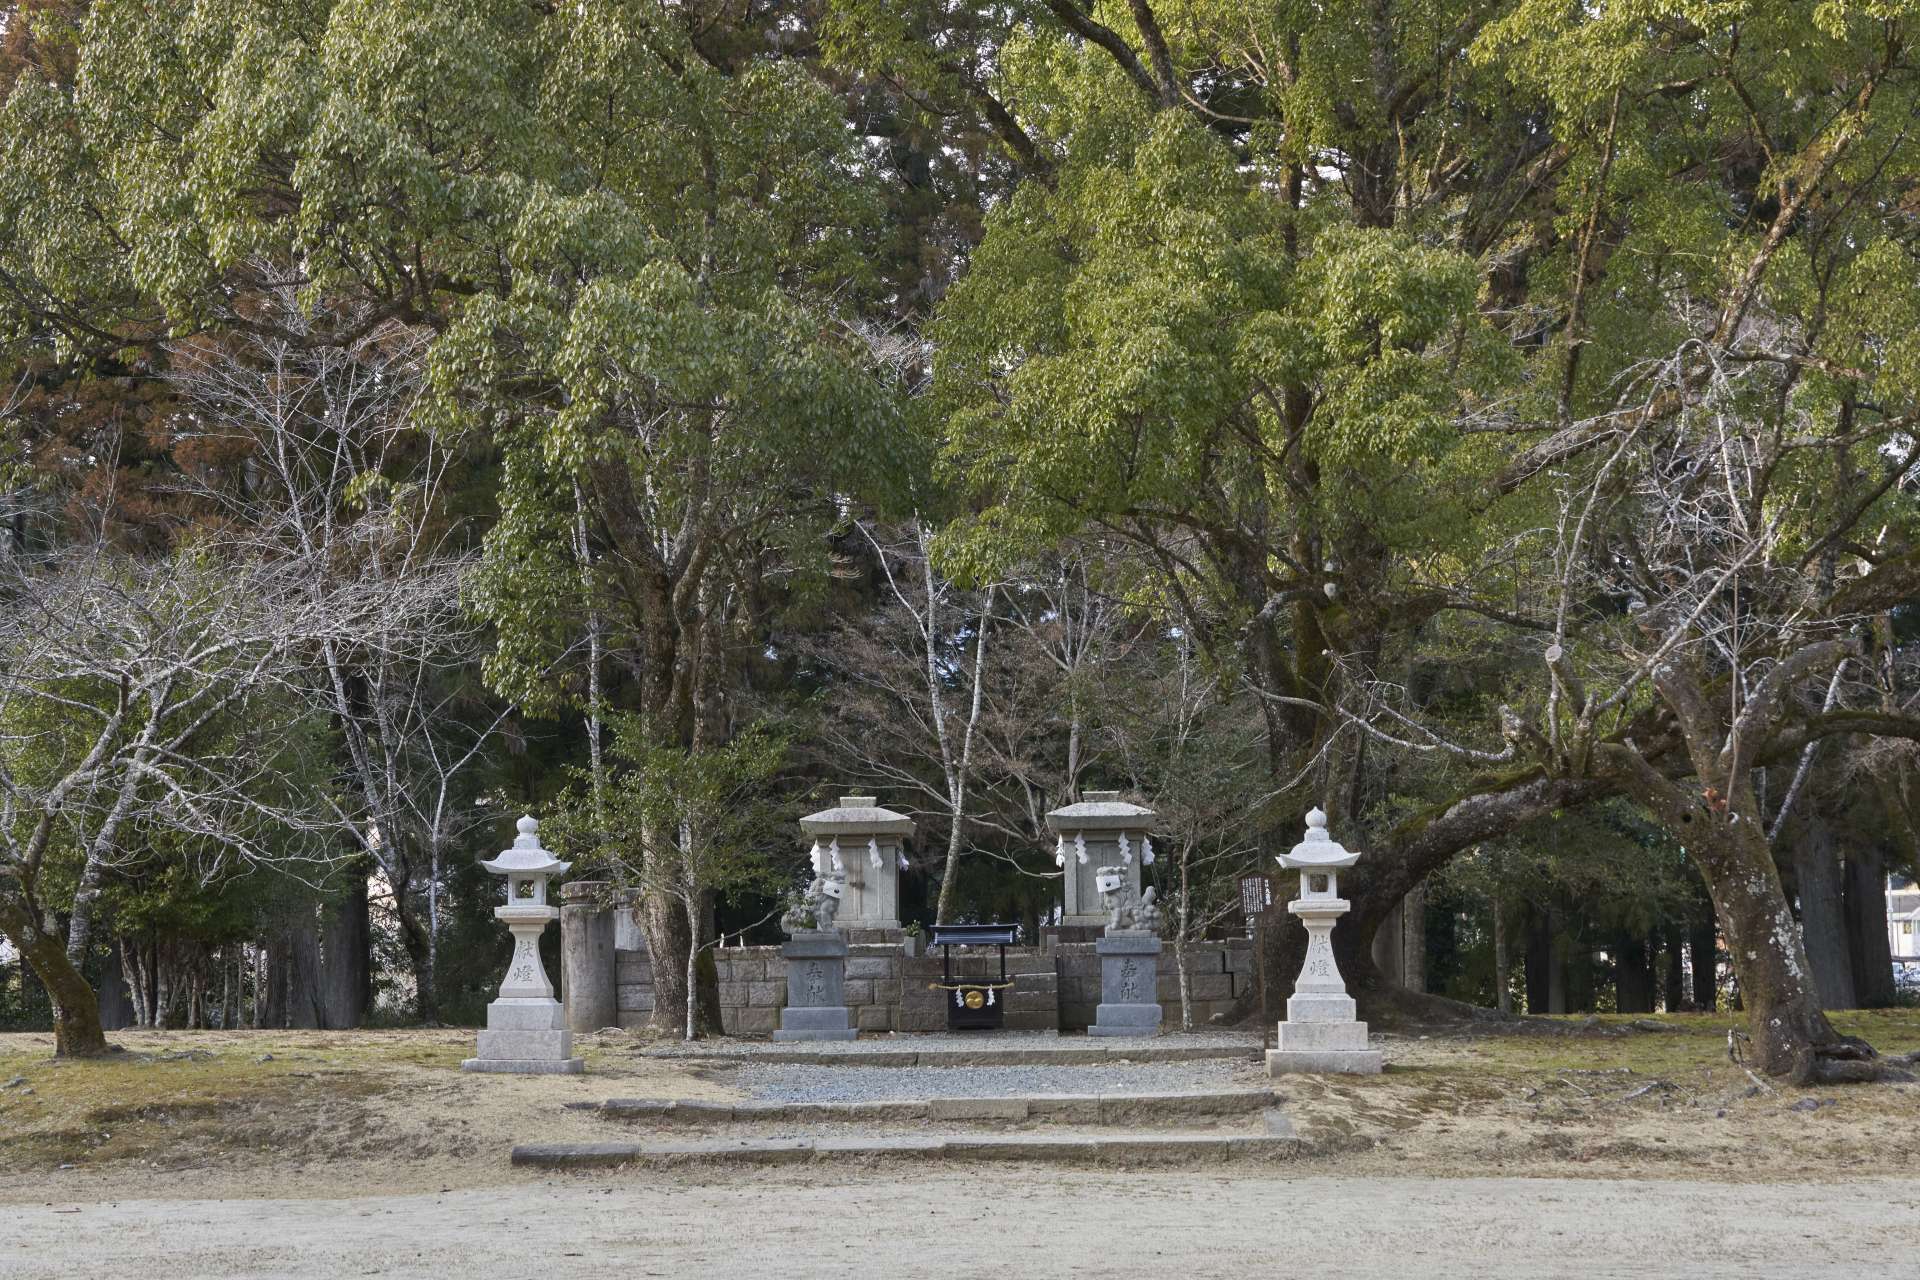 かつて社殿が鎮座していた跡地に、2基の石祠が祀られている